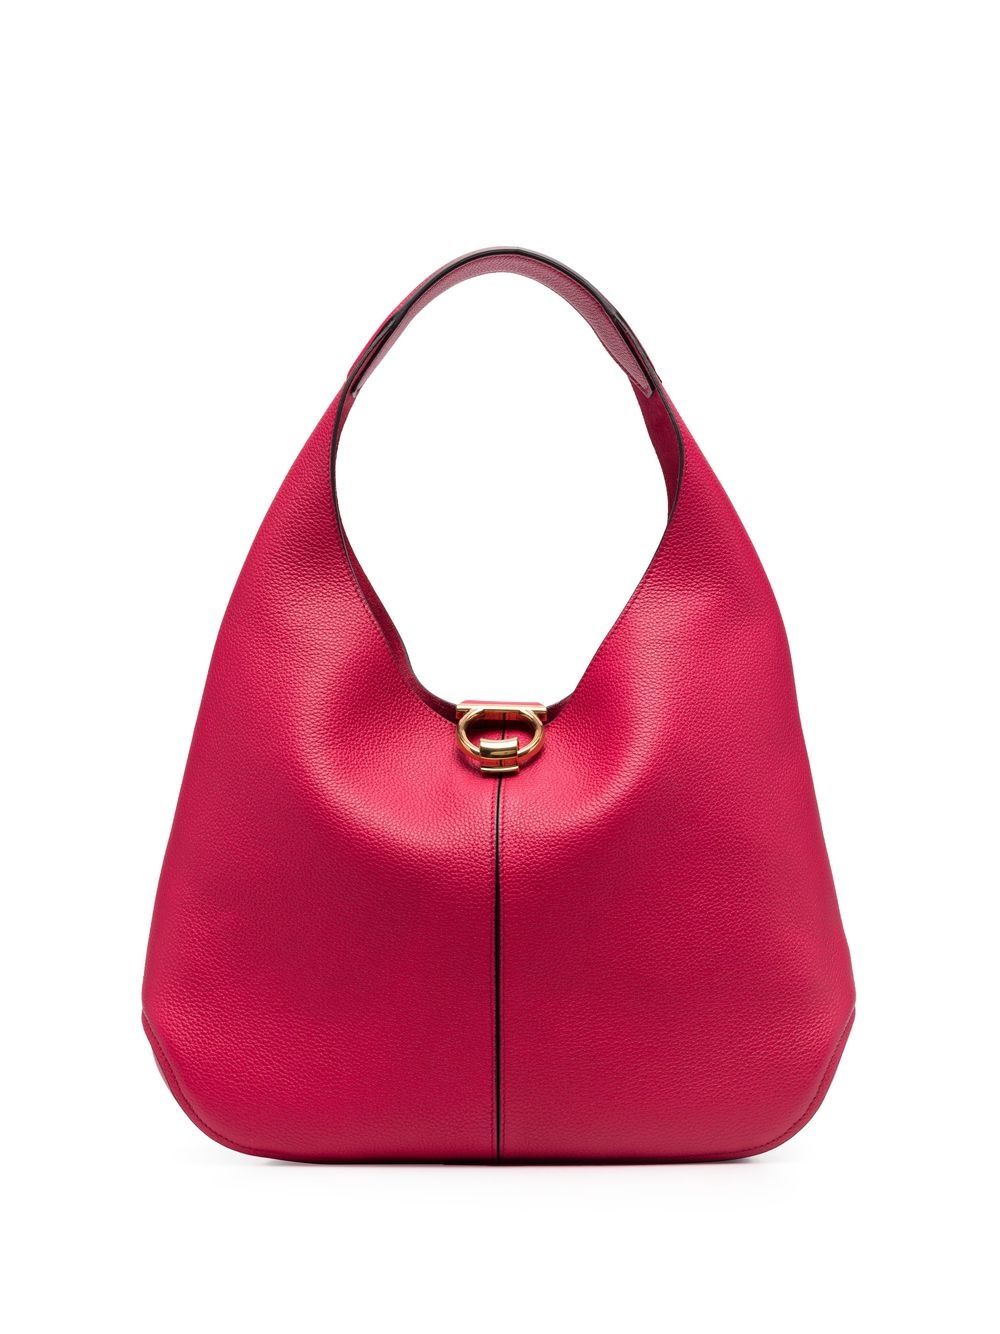 I regret buying Goyard Hobo bag : r/handbags